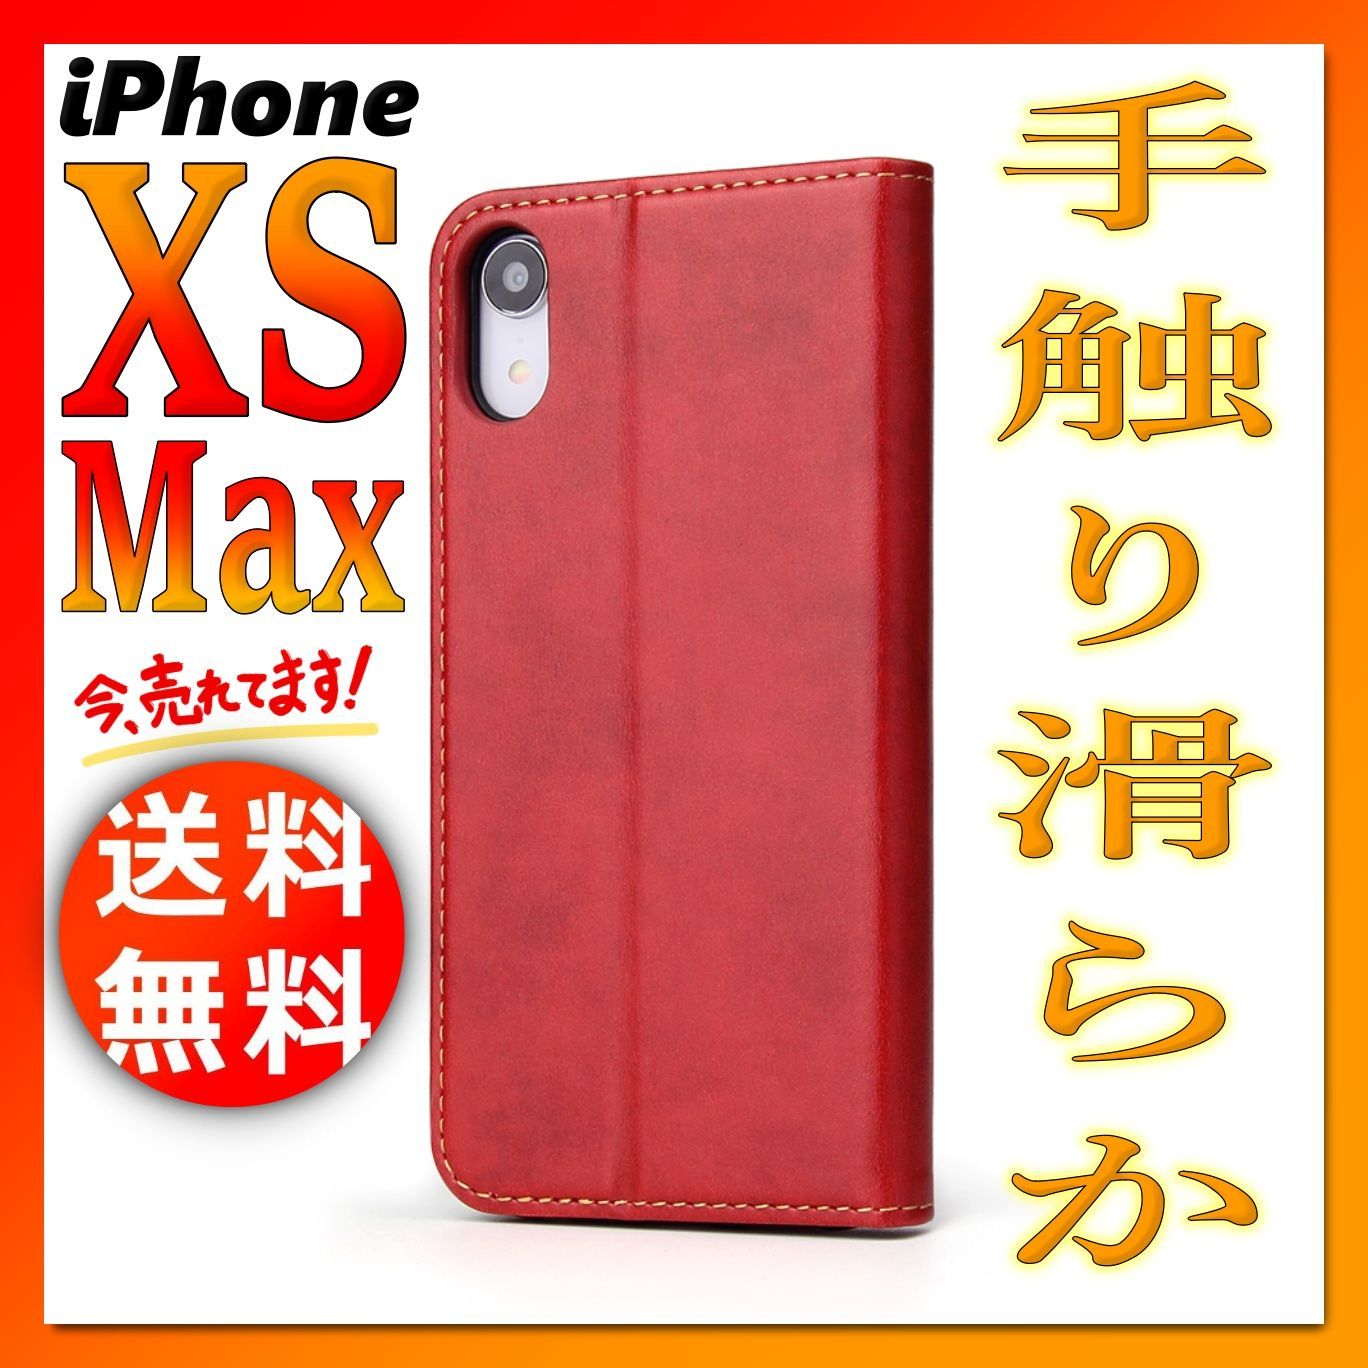 色は赤ですiPhone7 ケース 薄型 ICカード収納 TPU+レザー 赤